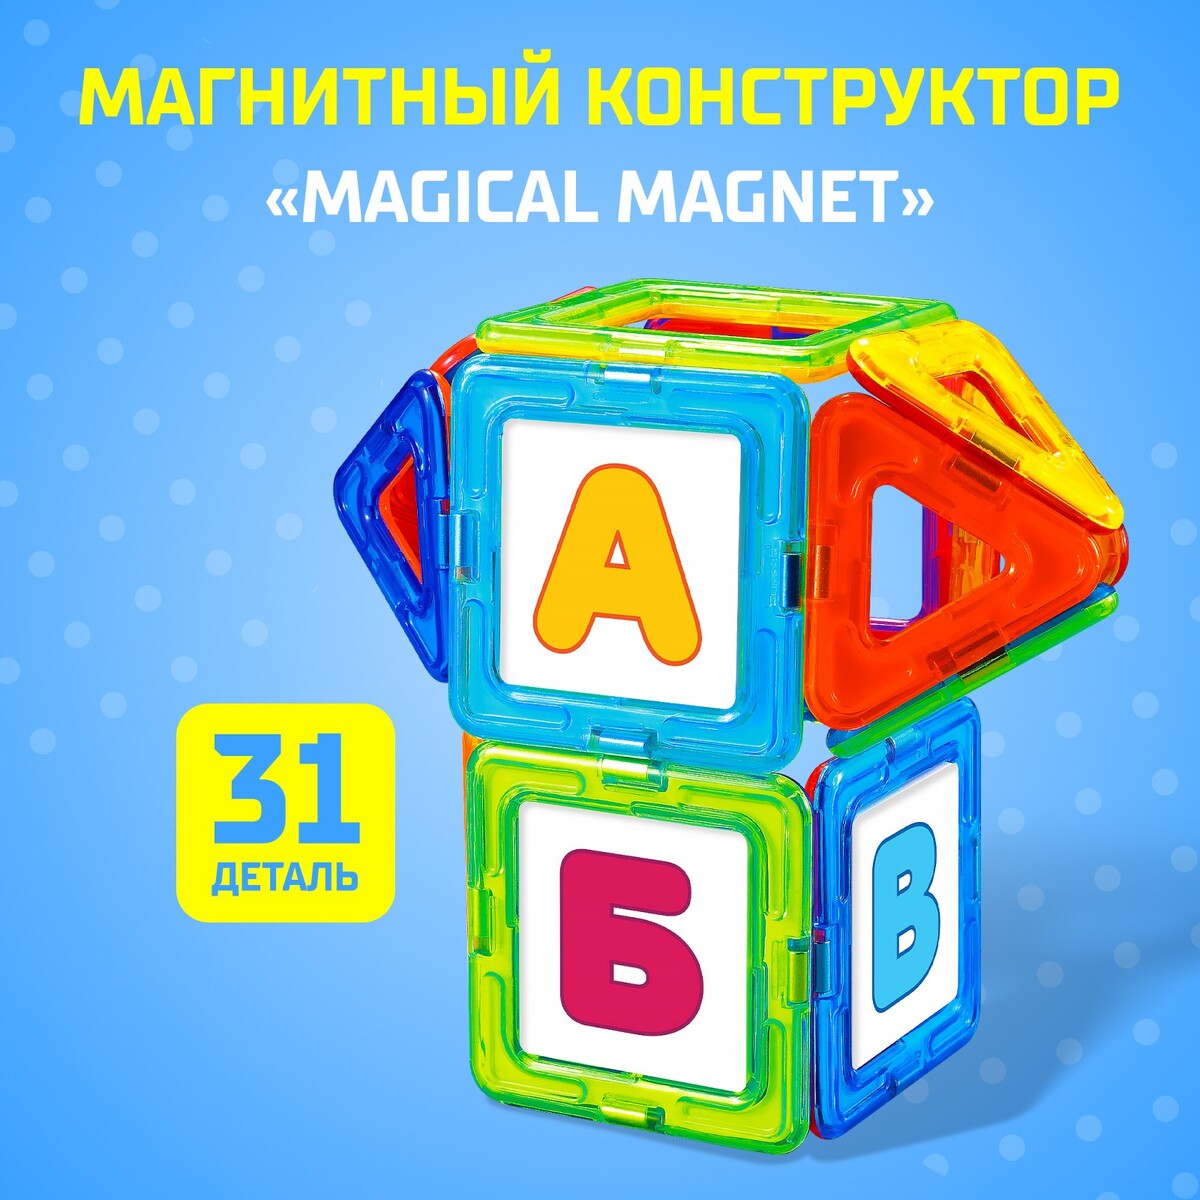 Магнитный конструктор magical magnet, 31 деталь, детали матовые конструктор магнитный 42 детали